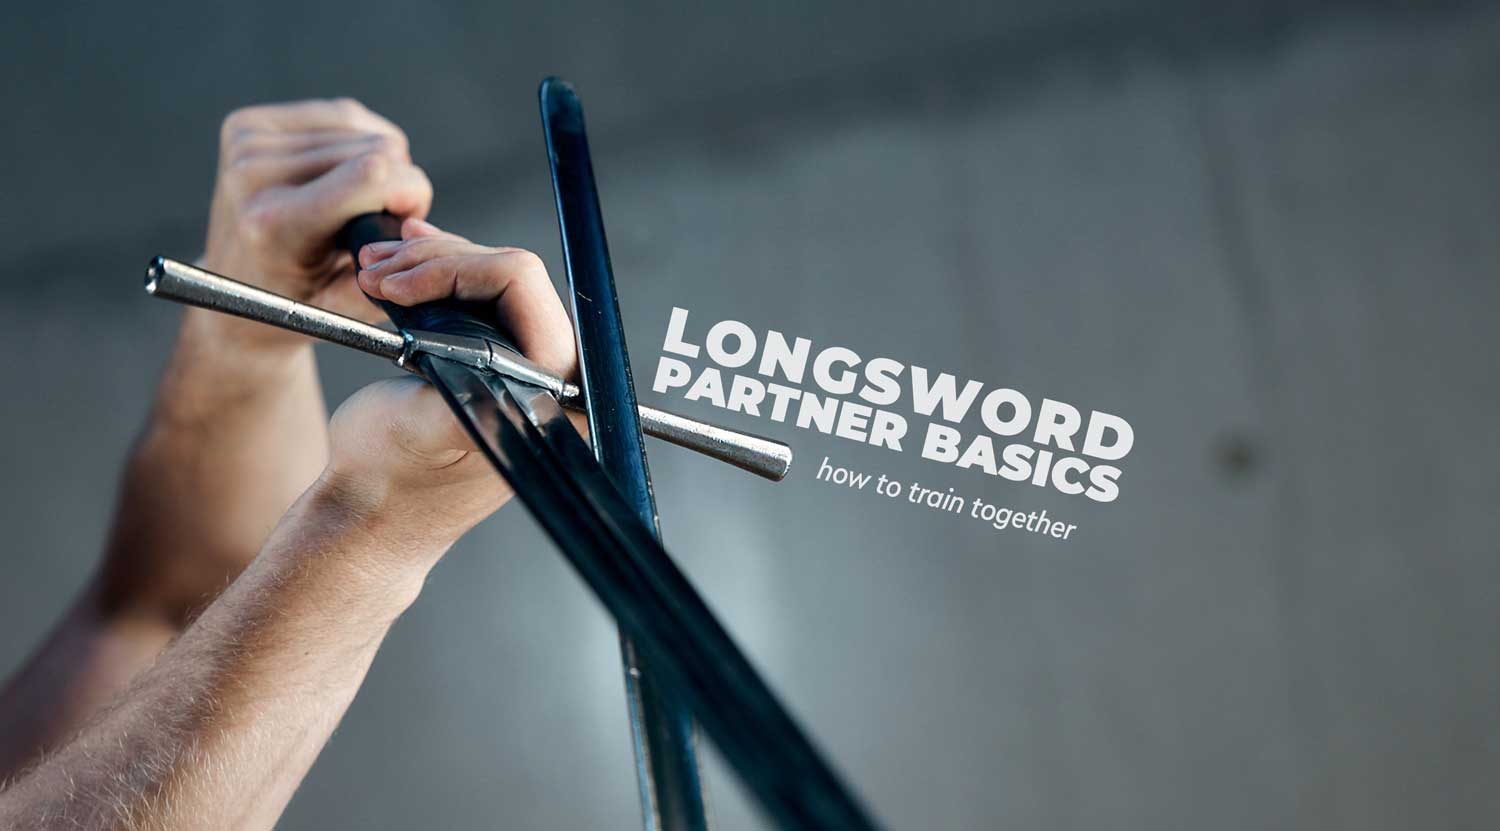 Longsword Partner Basics